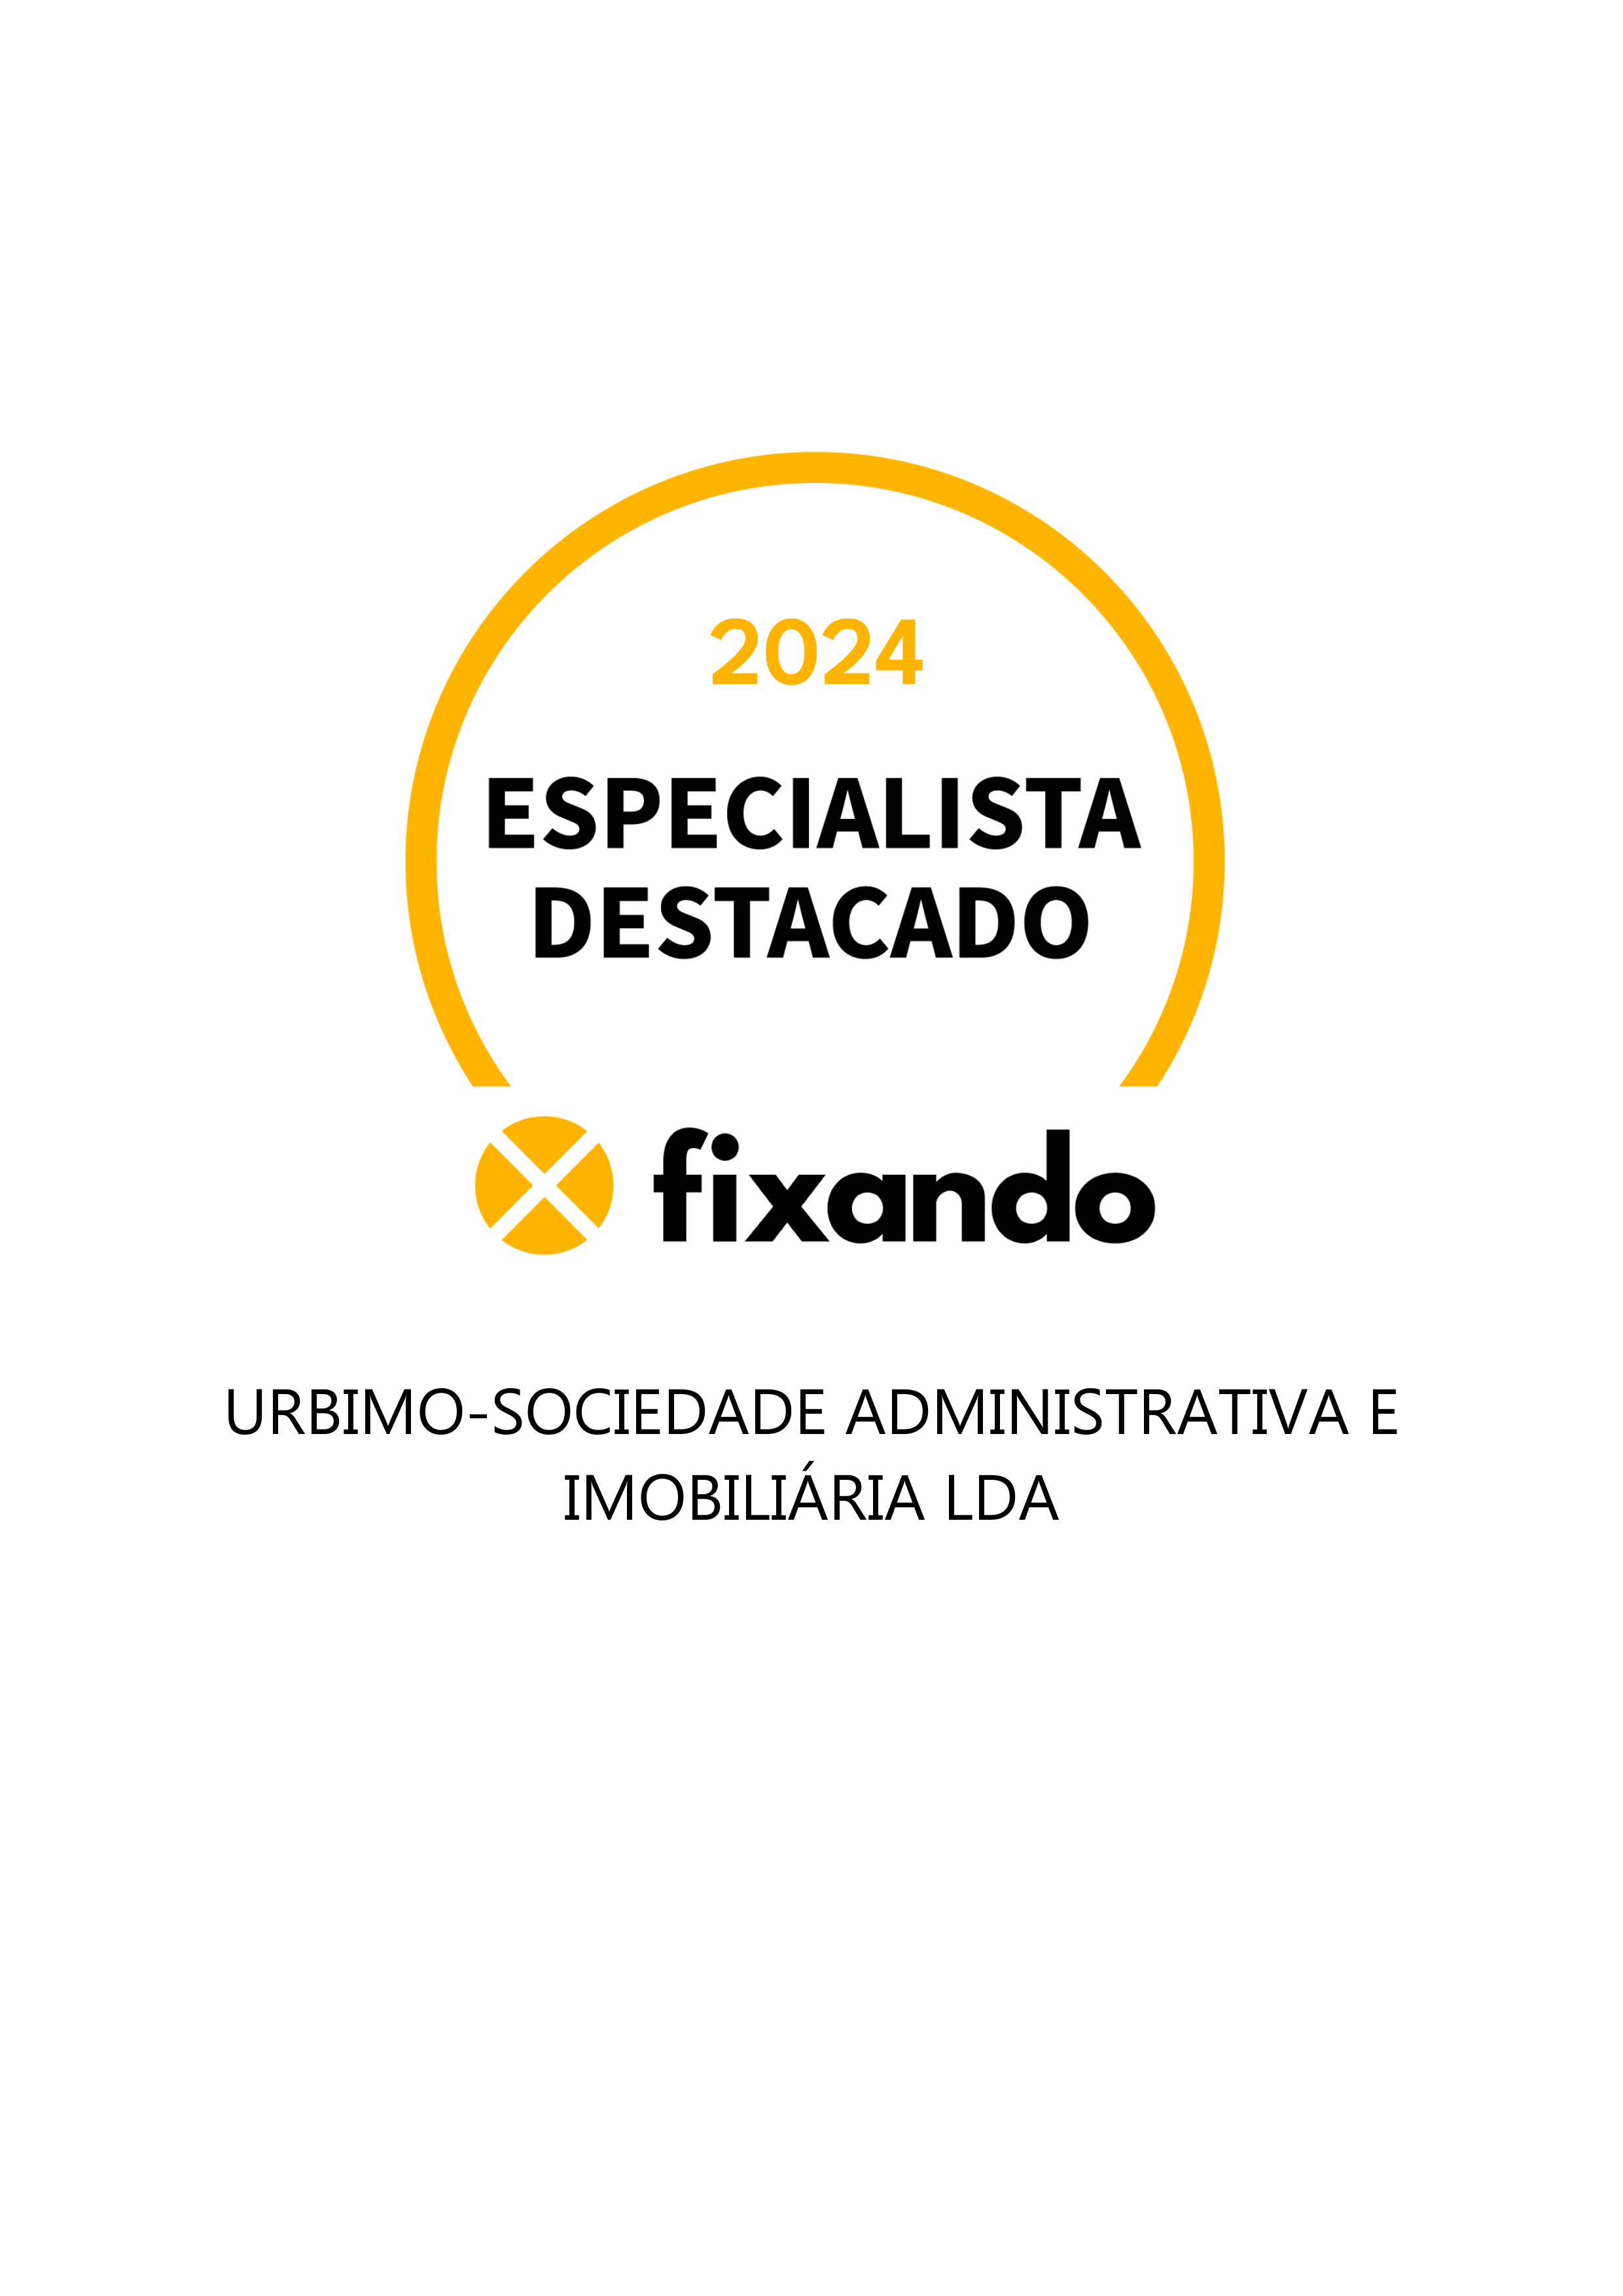 Urbimo-Sociedade Administrativa e Imobiliária Lda - Vila Nova de Gaia - Casa